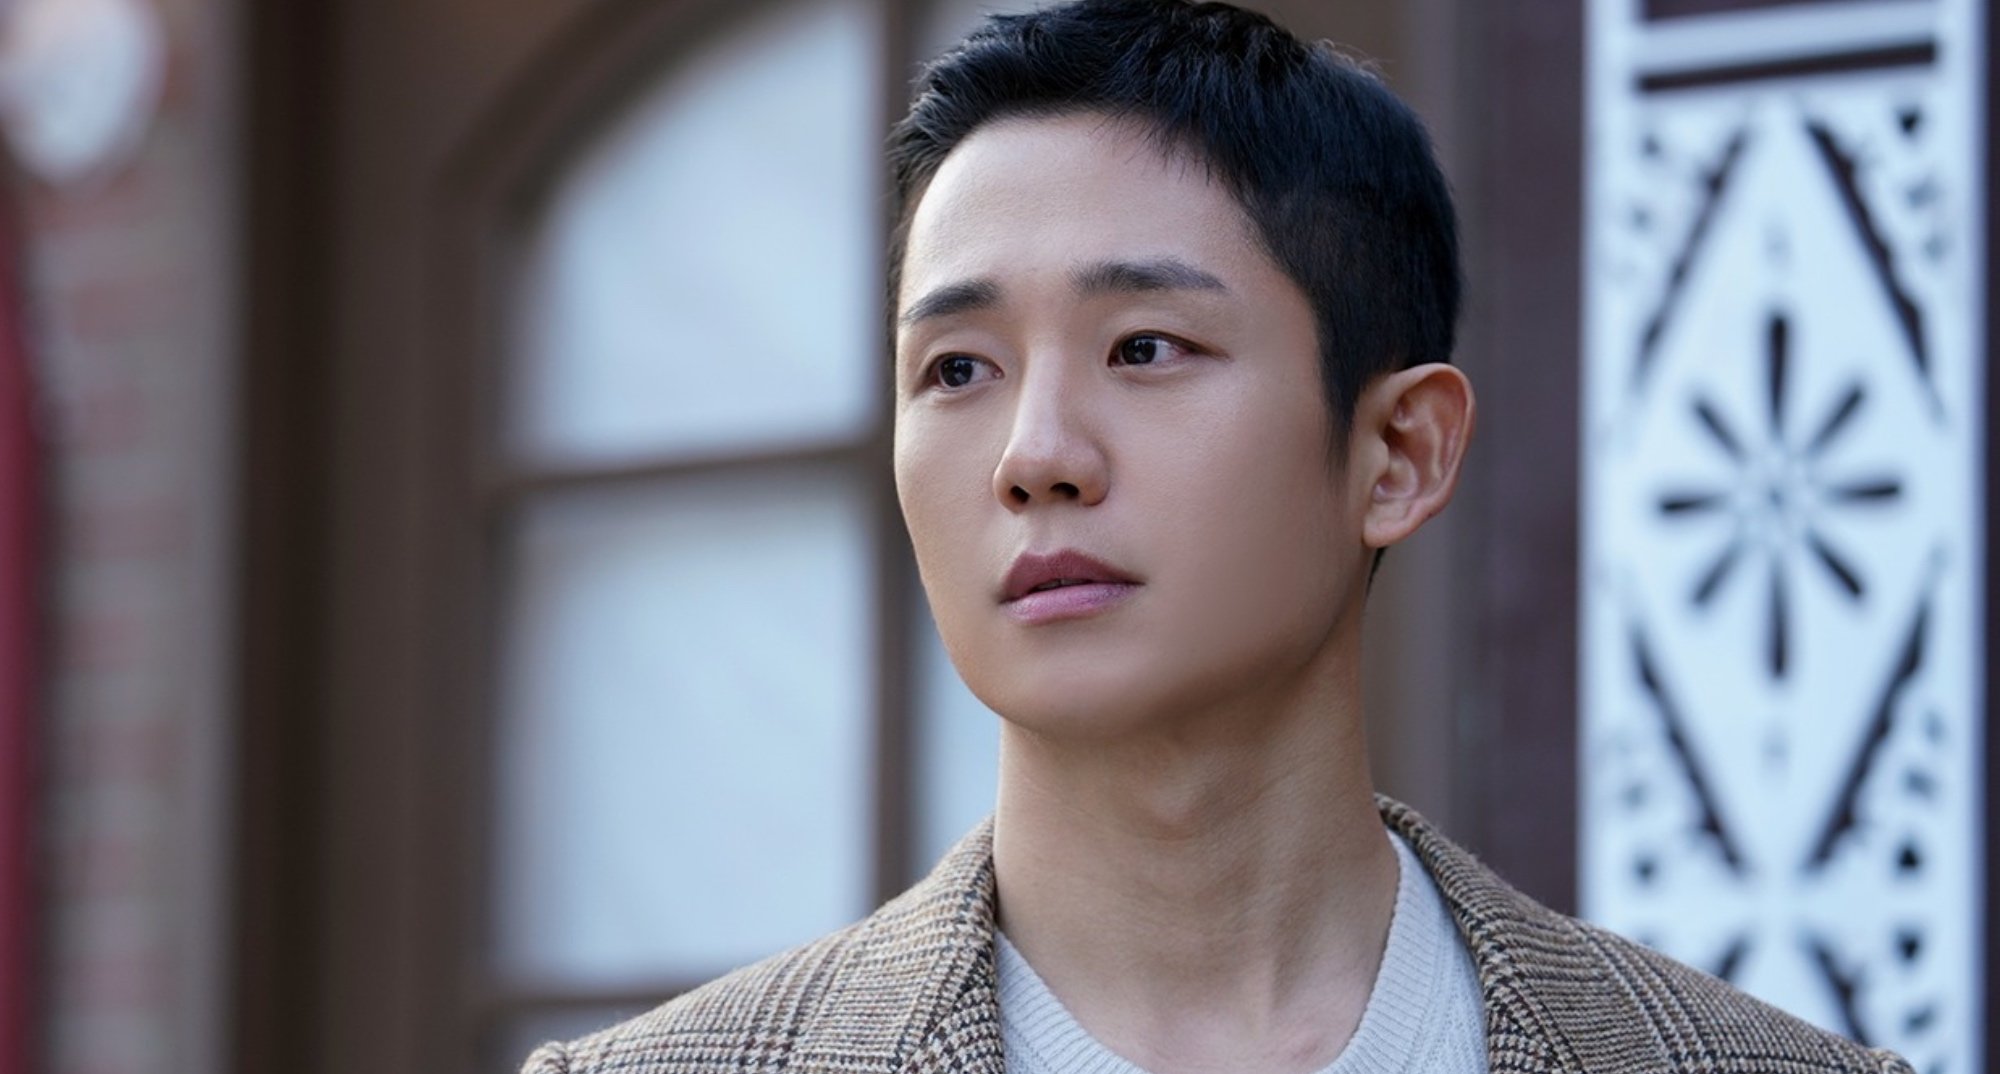 Jung Hae-In as Soo-ho in 'Snowdrop' K-drama wearing tweed jacket.